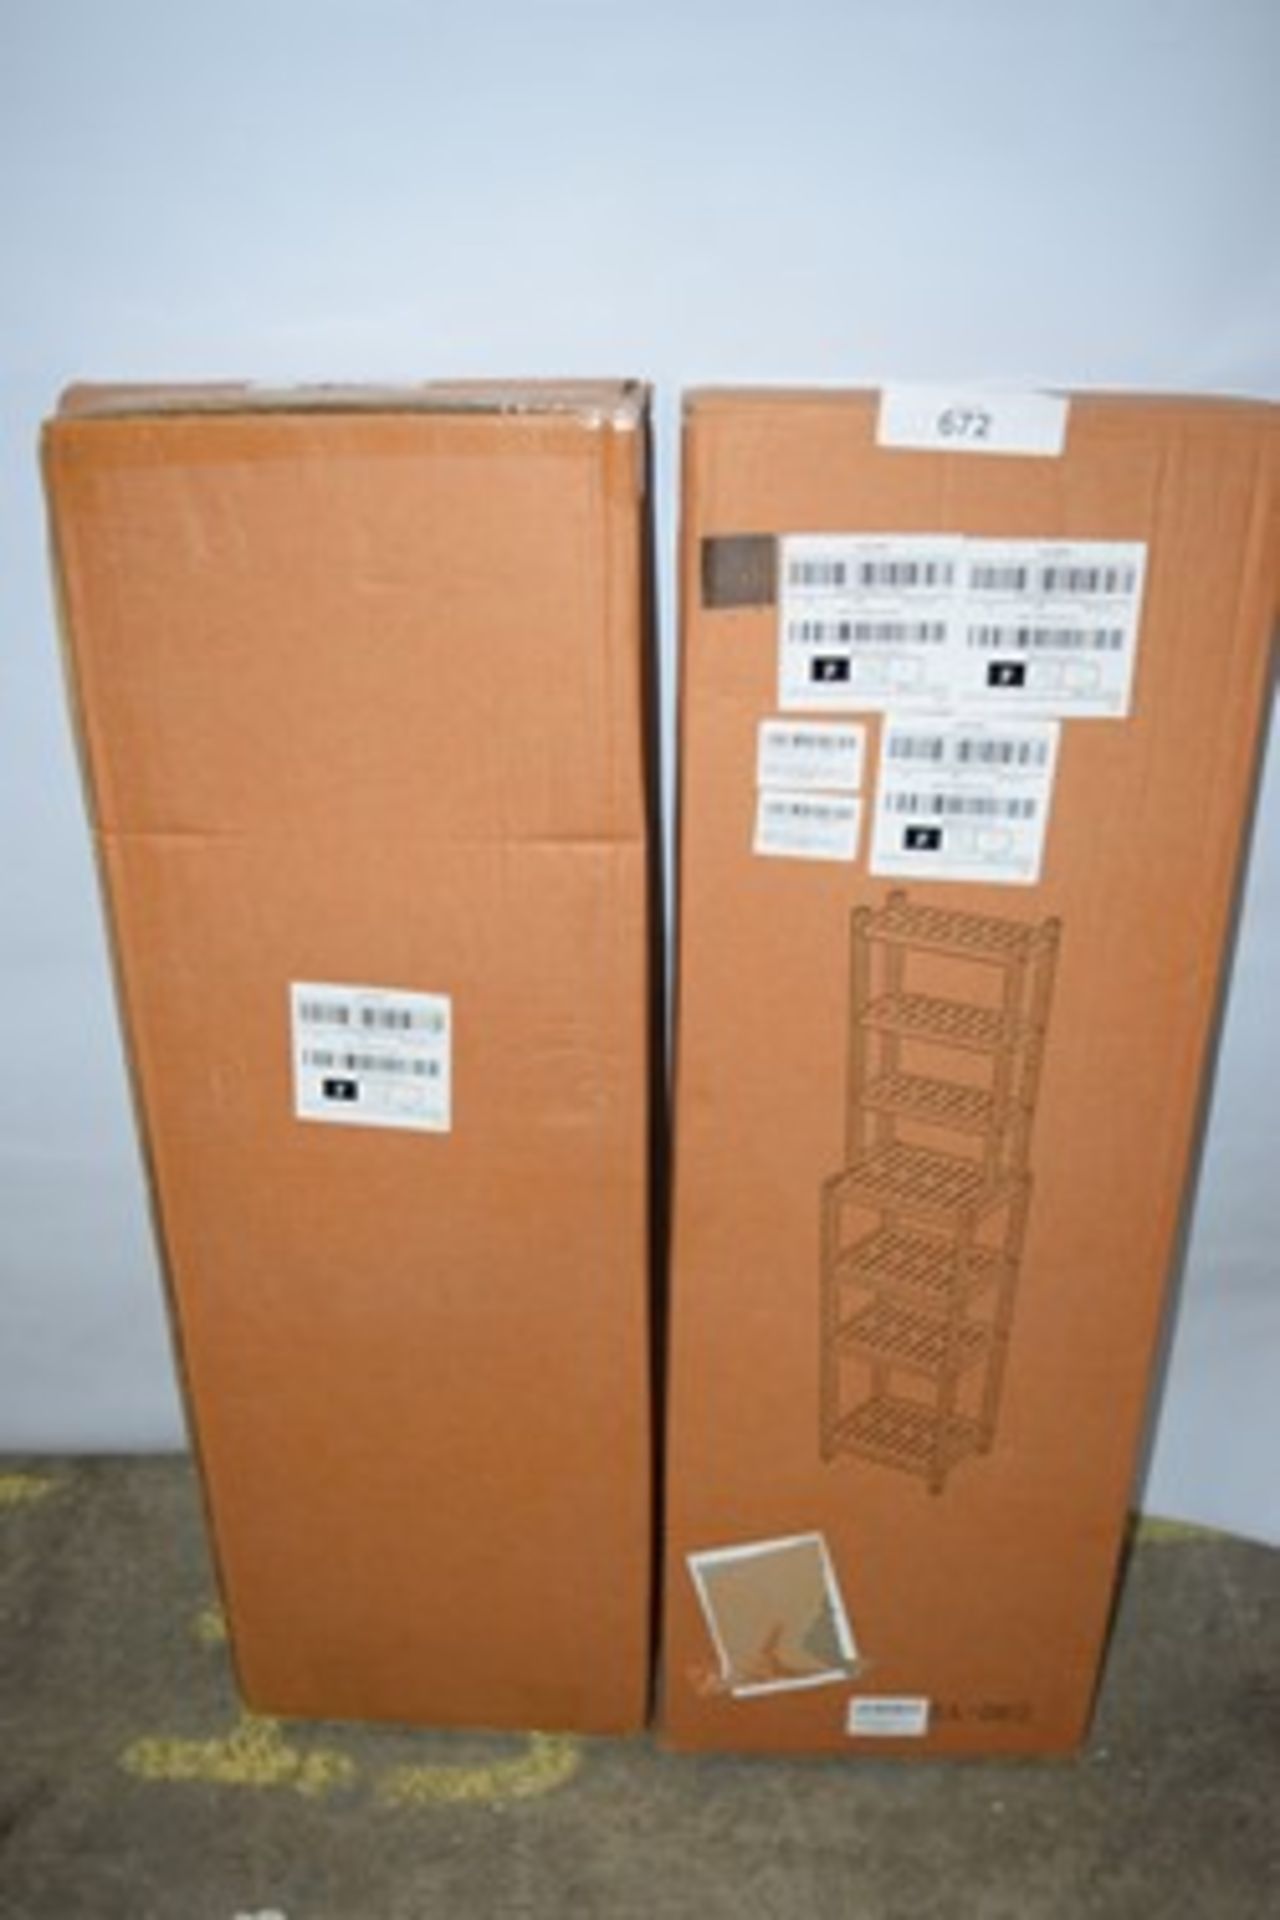 4 x Bamboo Shelf units code: LGO 10V0 -new in box- (black mag middle of isle GSF10)